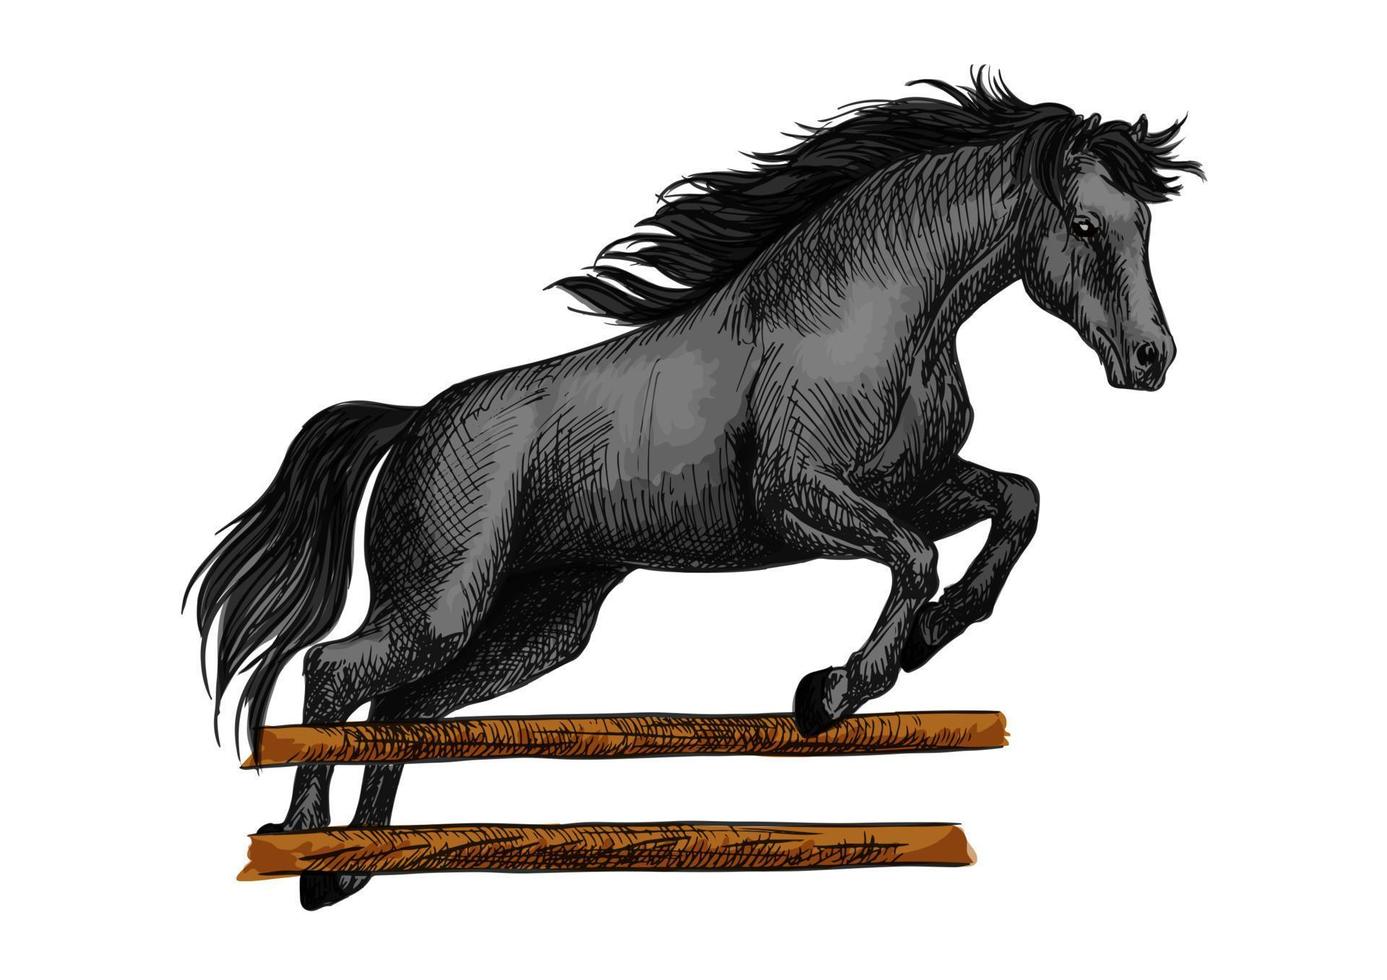 Salto De Cavalo Pulando Equestre - Foto gratuita no Pixabay - Pixabay